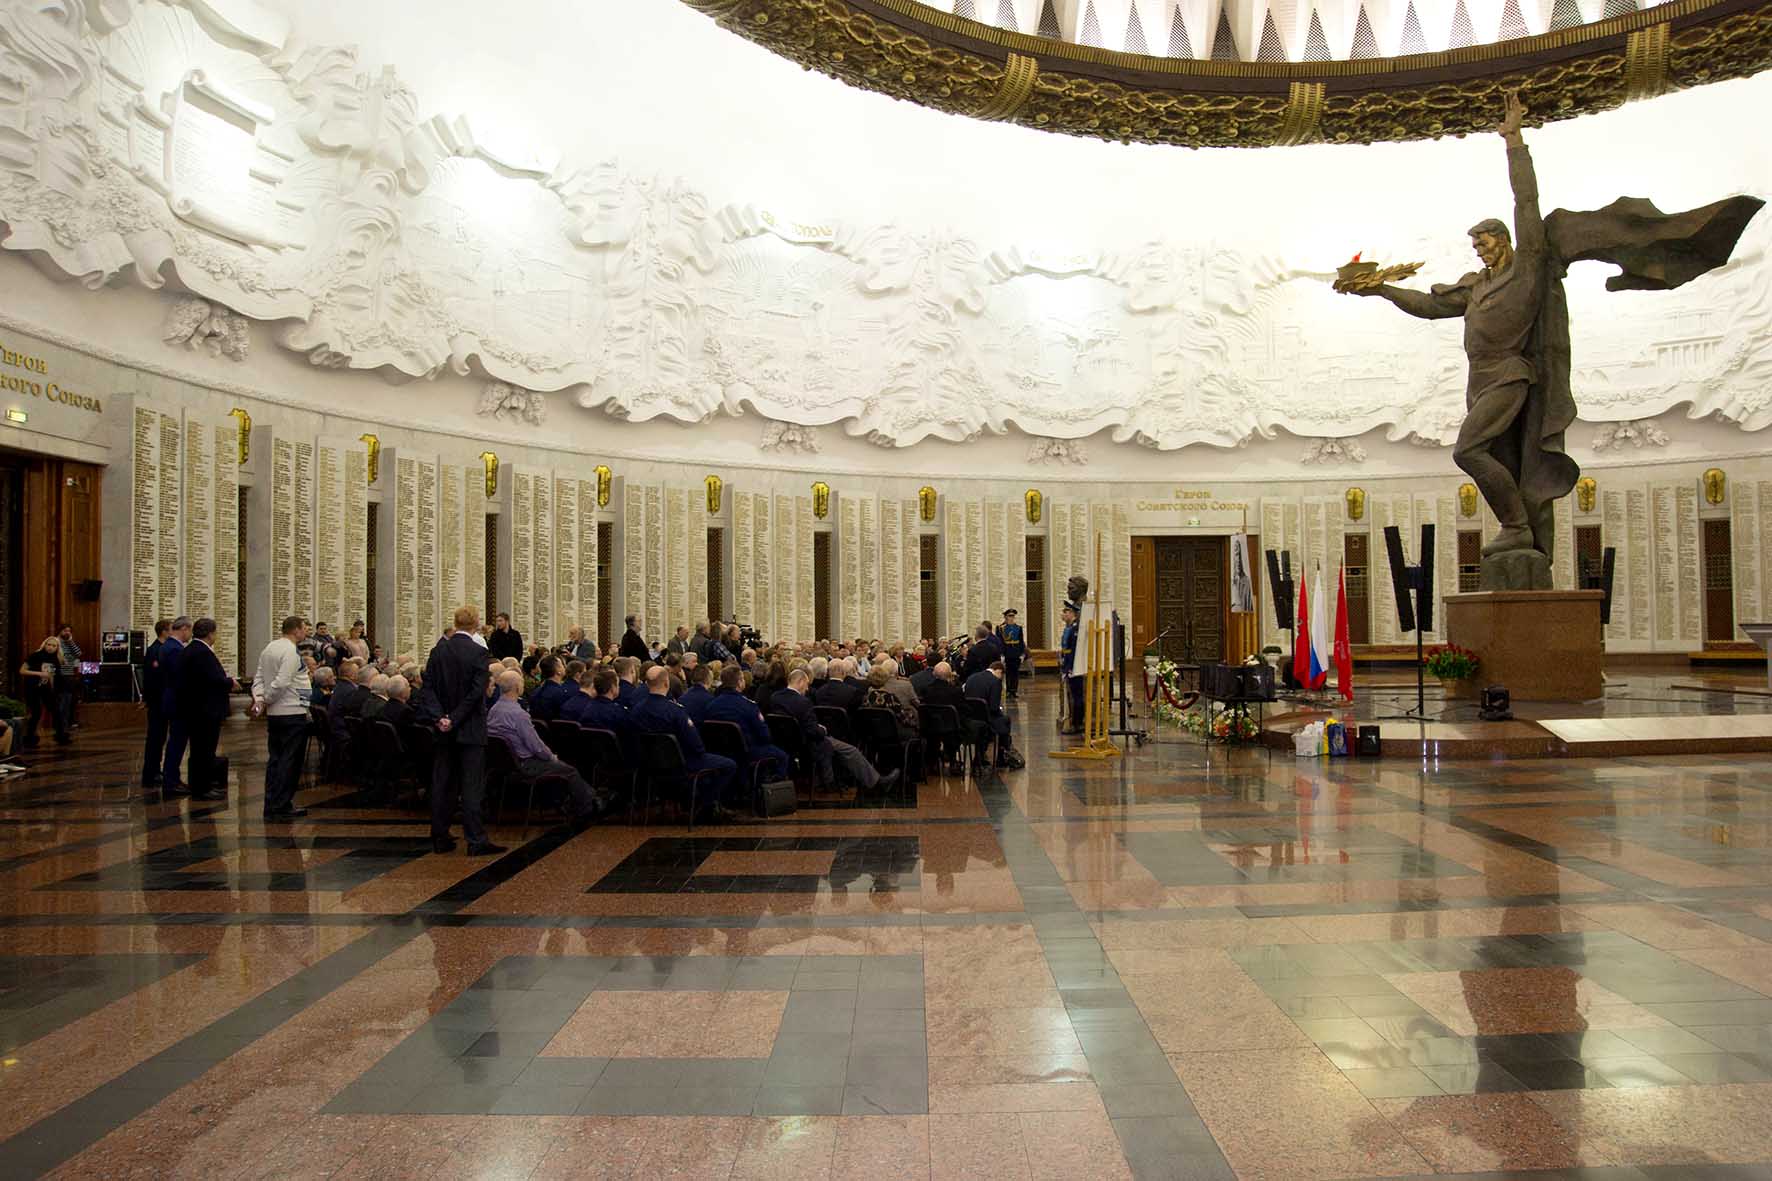 фото музея славы москва